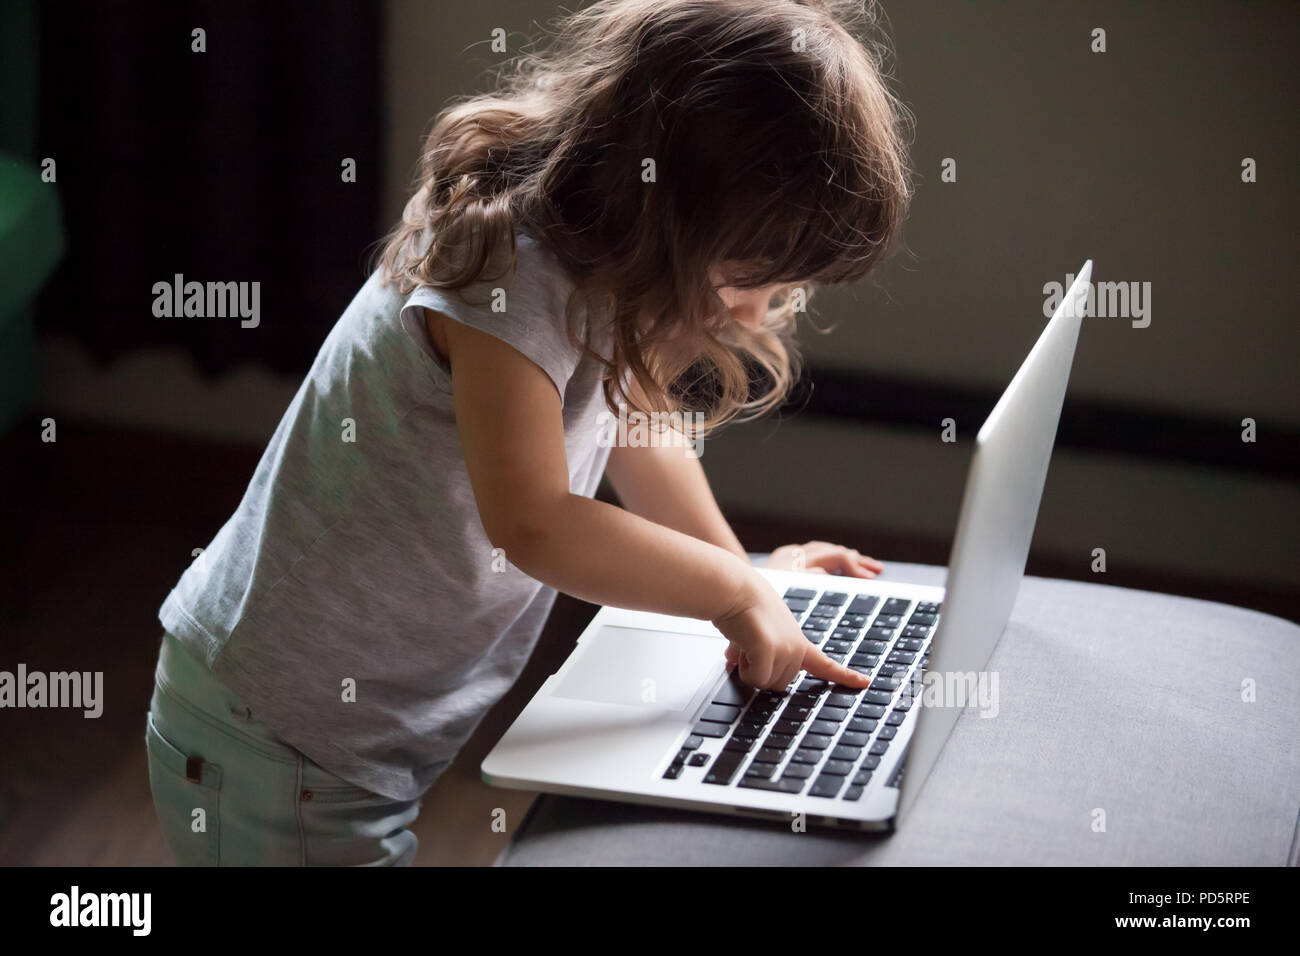 Curieux girl using laptop, pc de contrôler la sécurité d'enfant concept Banque D'Images